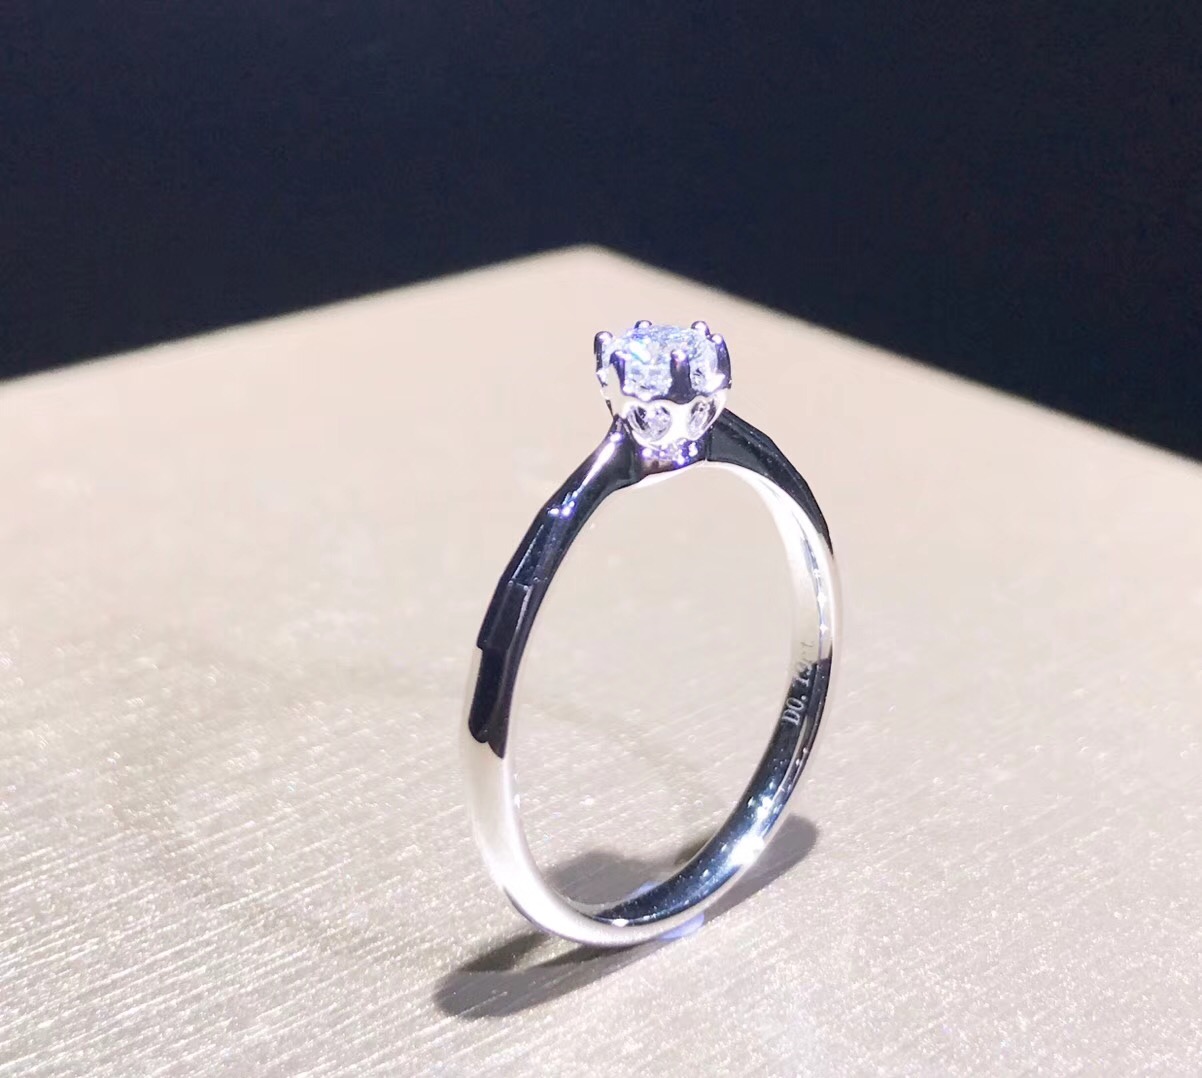 K2426D Engagement Ring in 18k White Gold